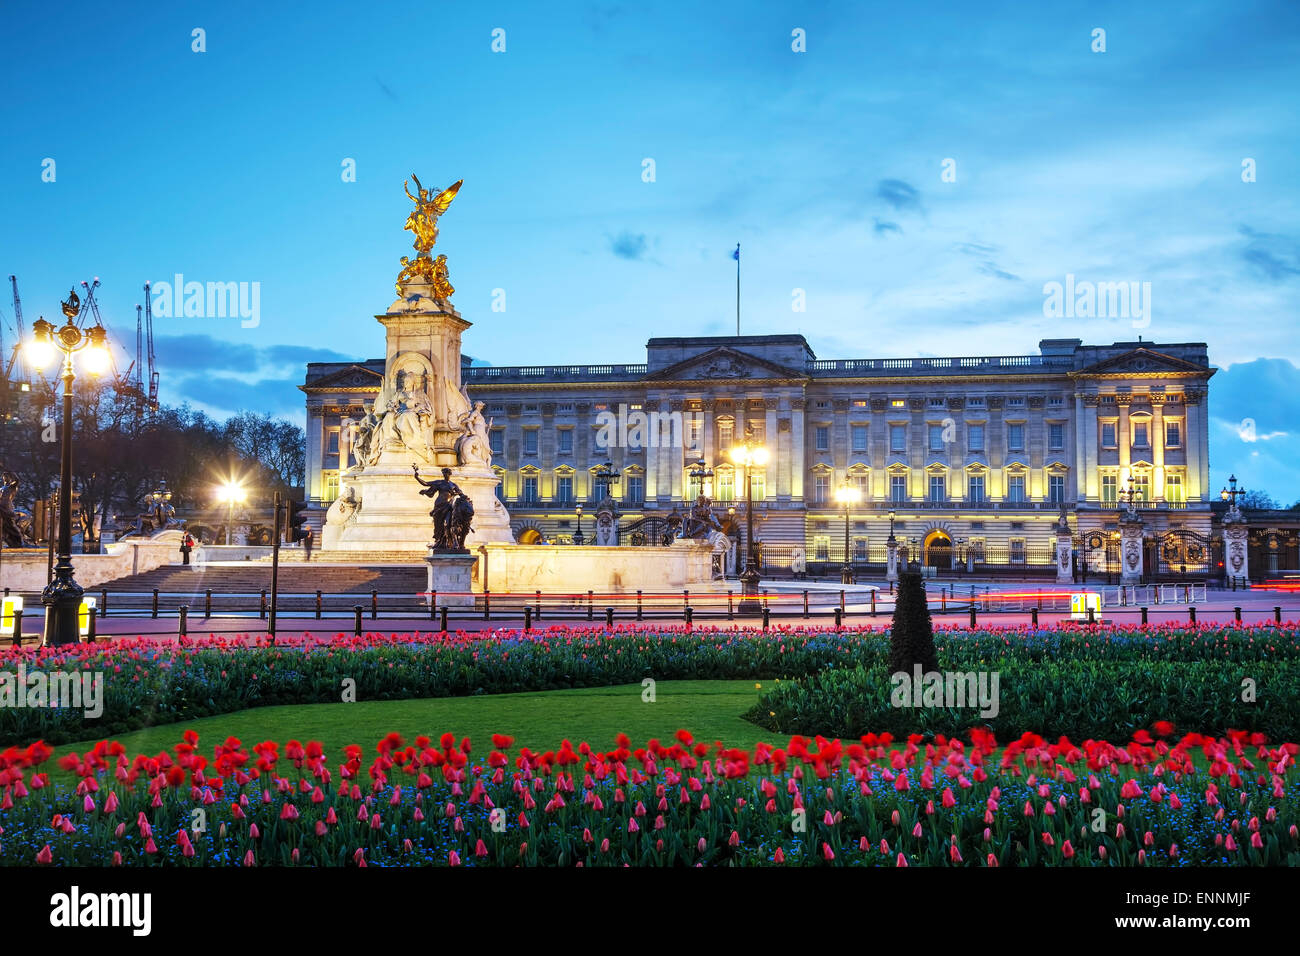 Londres - 12 de abril: el palacio de Buckingham durante la puesta de sol el 12 de abril de 2015 en Londres, Reino Unido. Foto de stock